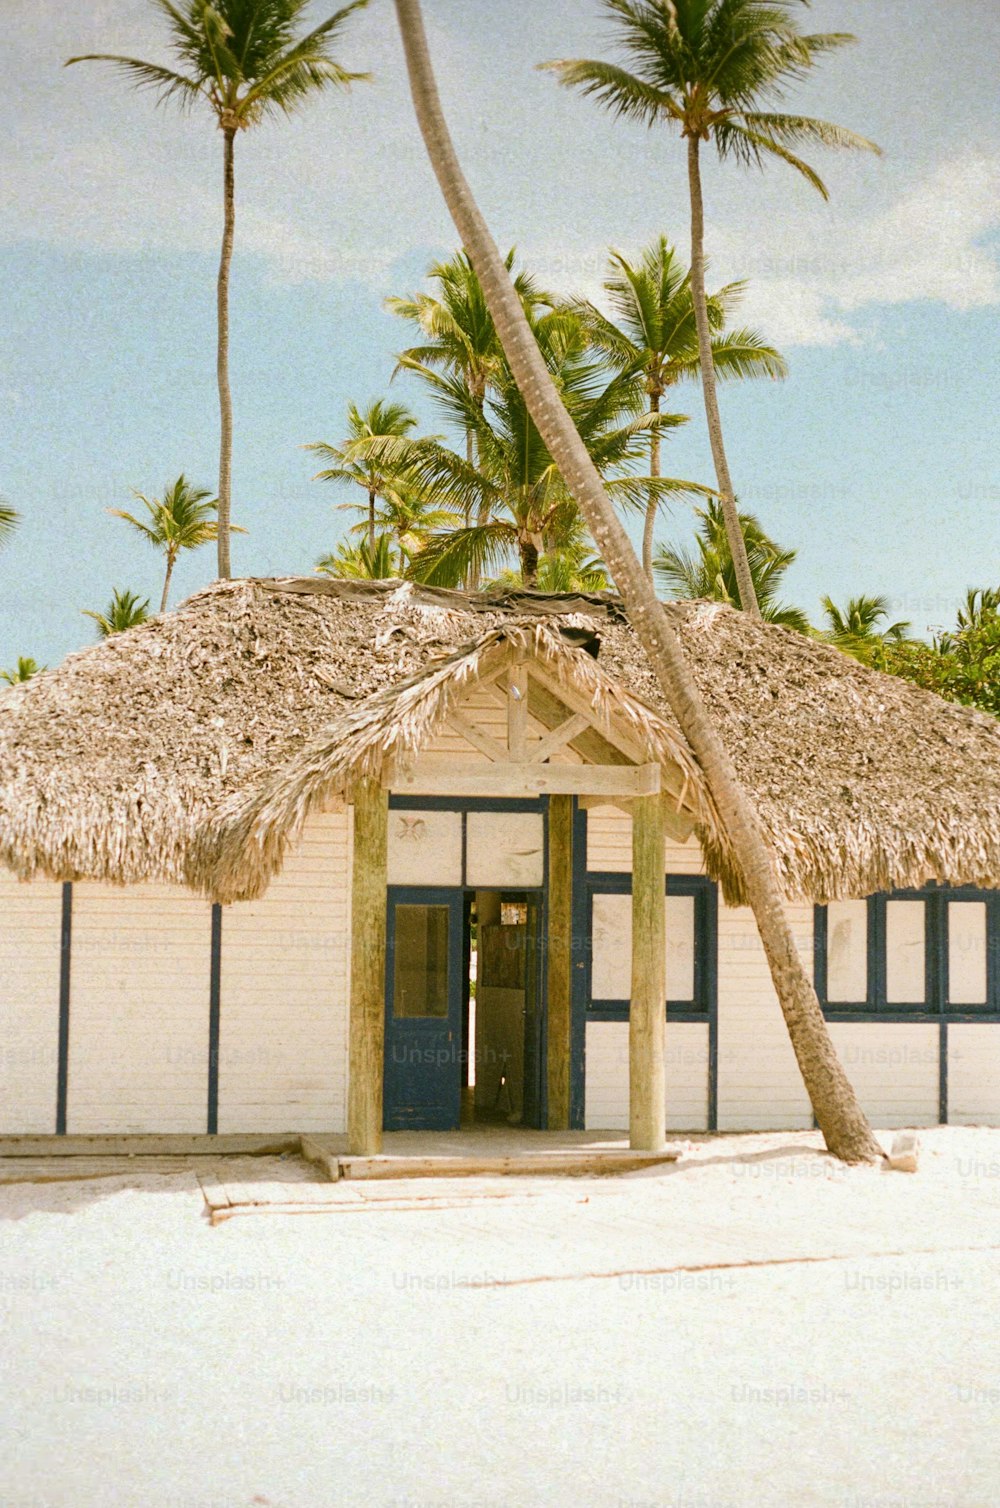 Eine Hütte mit Strohdach und Palmen